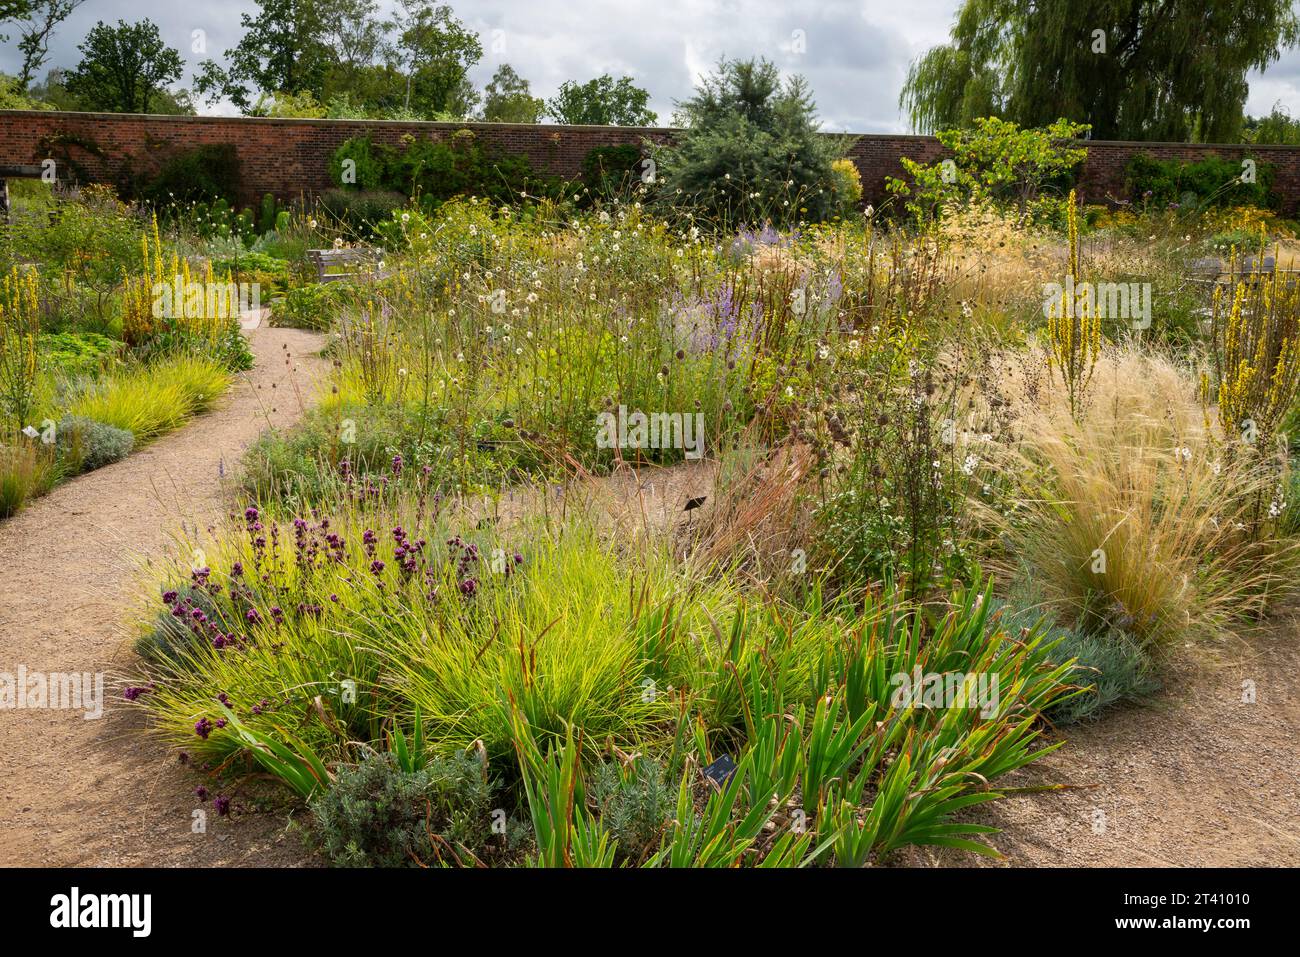 Plantation d'été dans le Paradise Garden à RHS Bridgewater, Worsley, Manchester, Angleterre. Banque D'Images